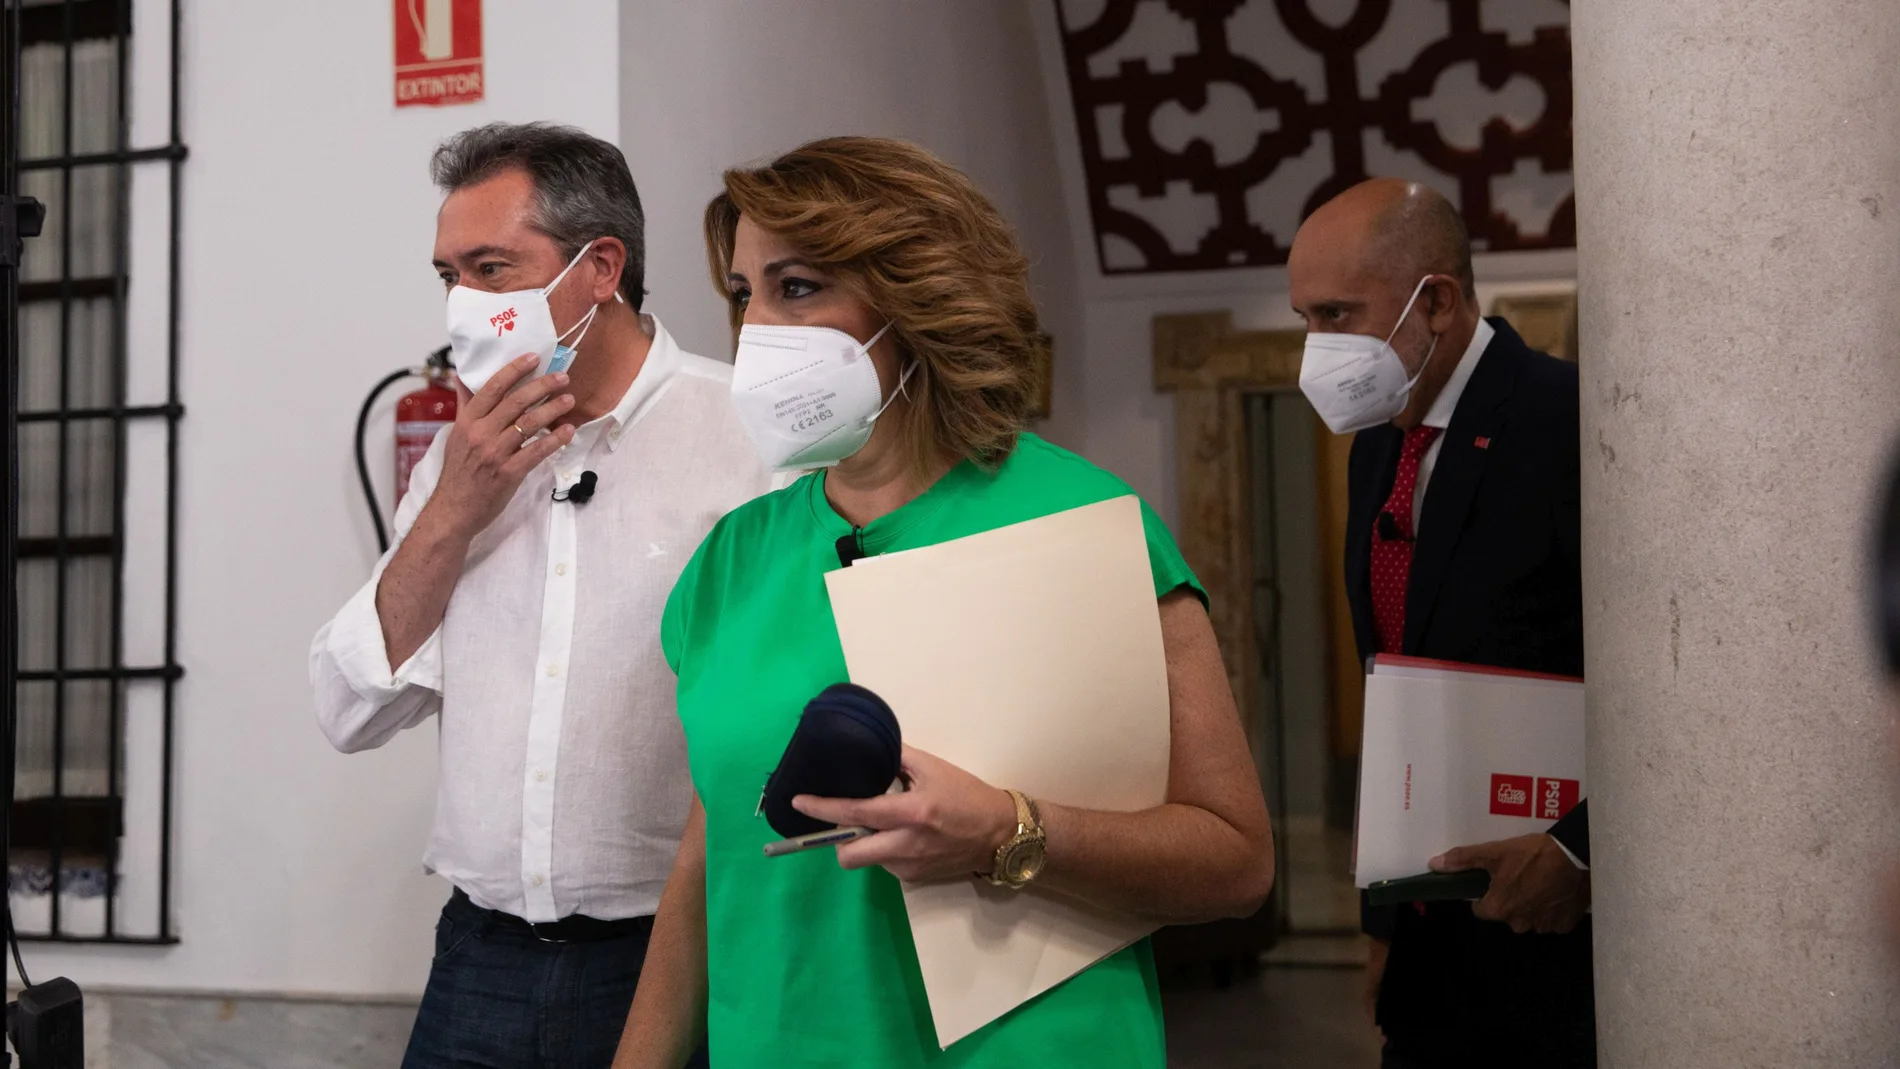 Al izquierda, Juan Espadas, junto a Susana Díaz y Luis Ángel Hierro, en la sede regional del PSOE andaluz